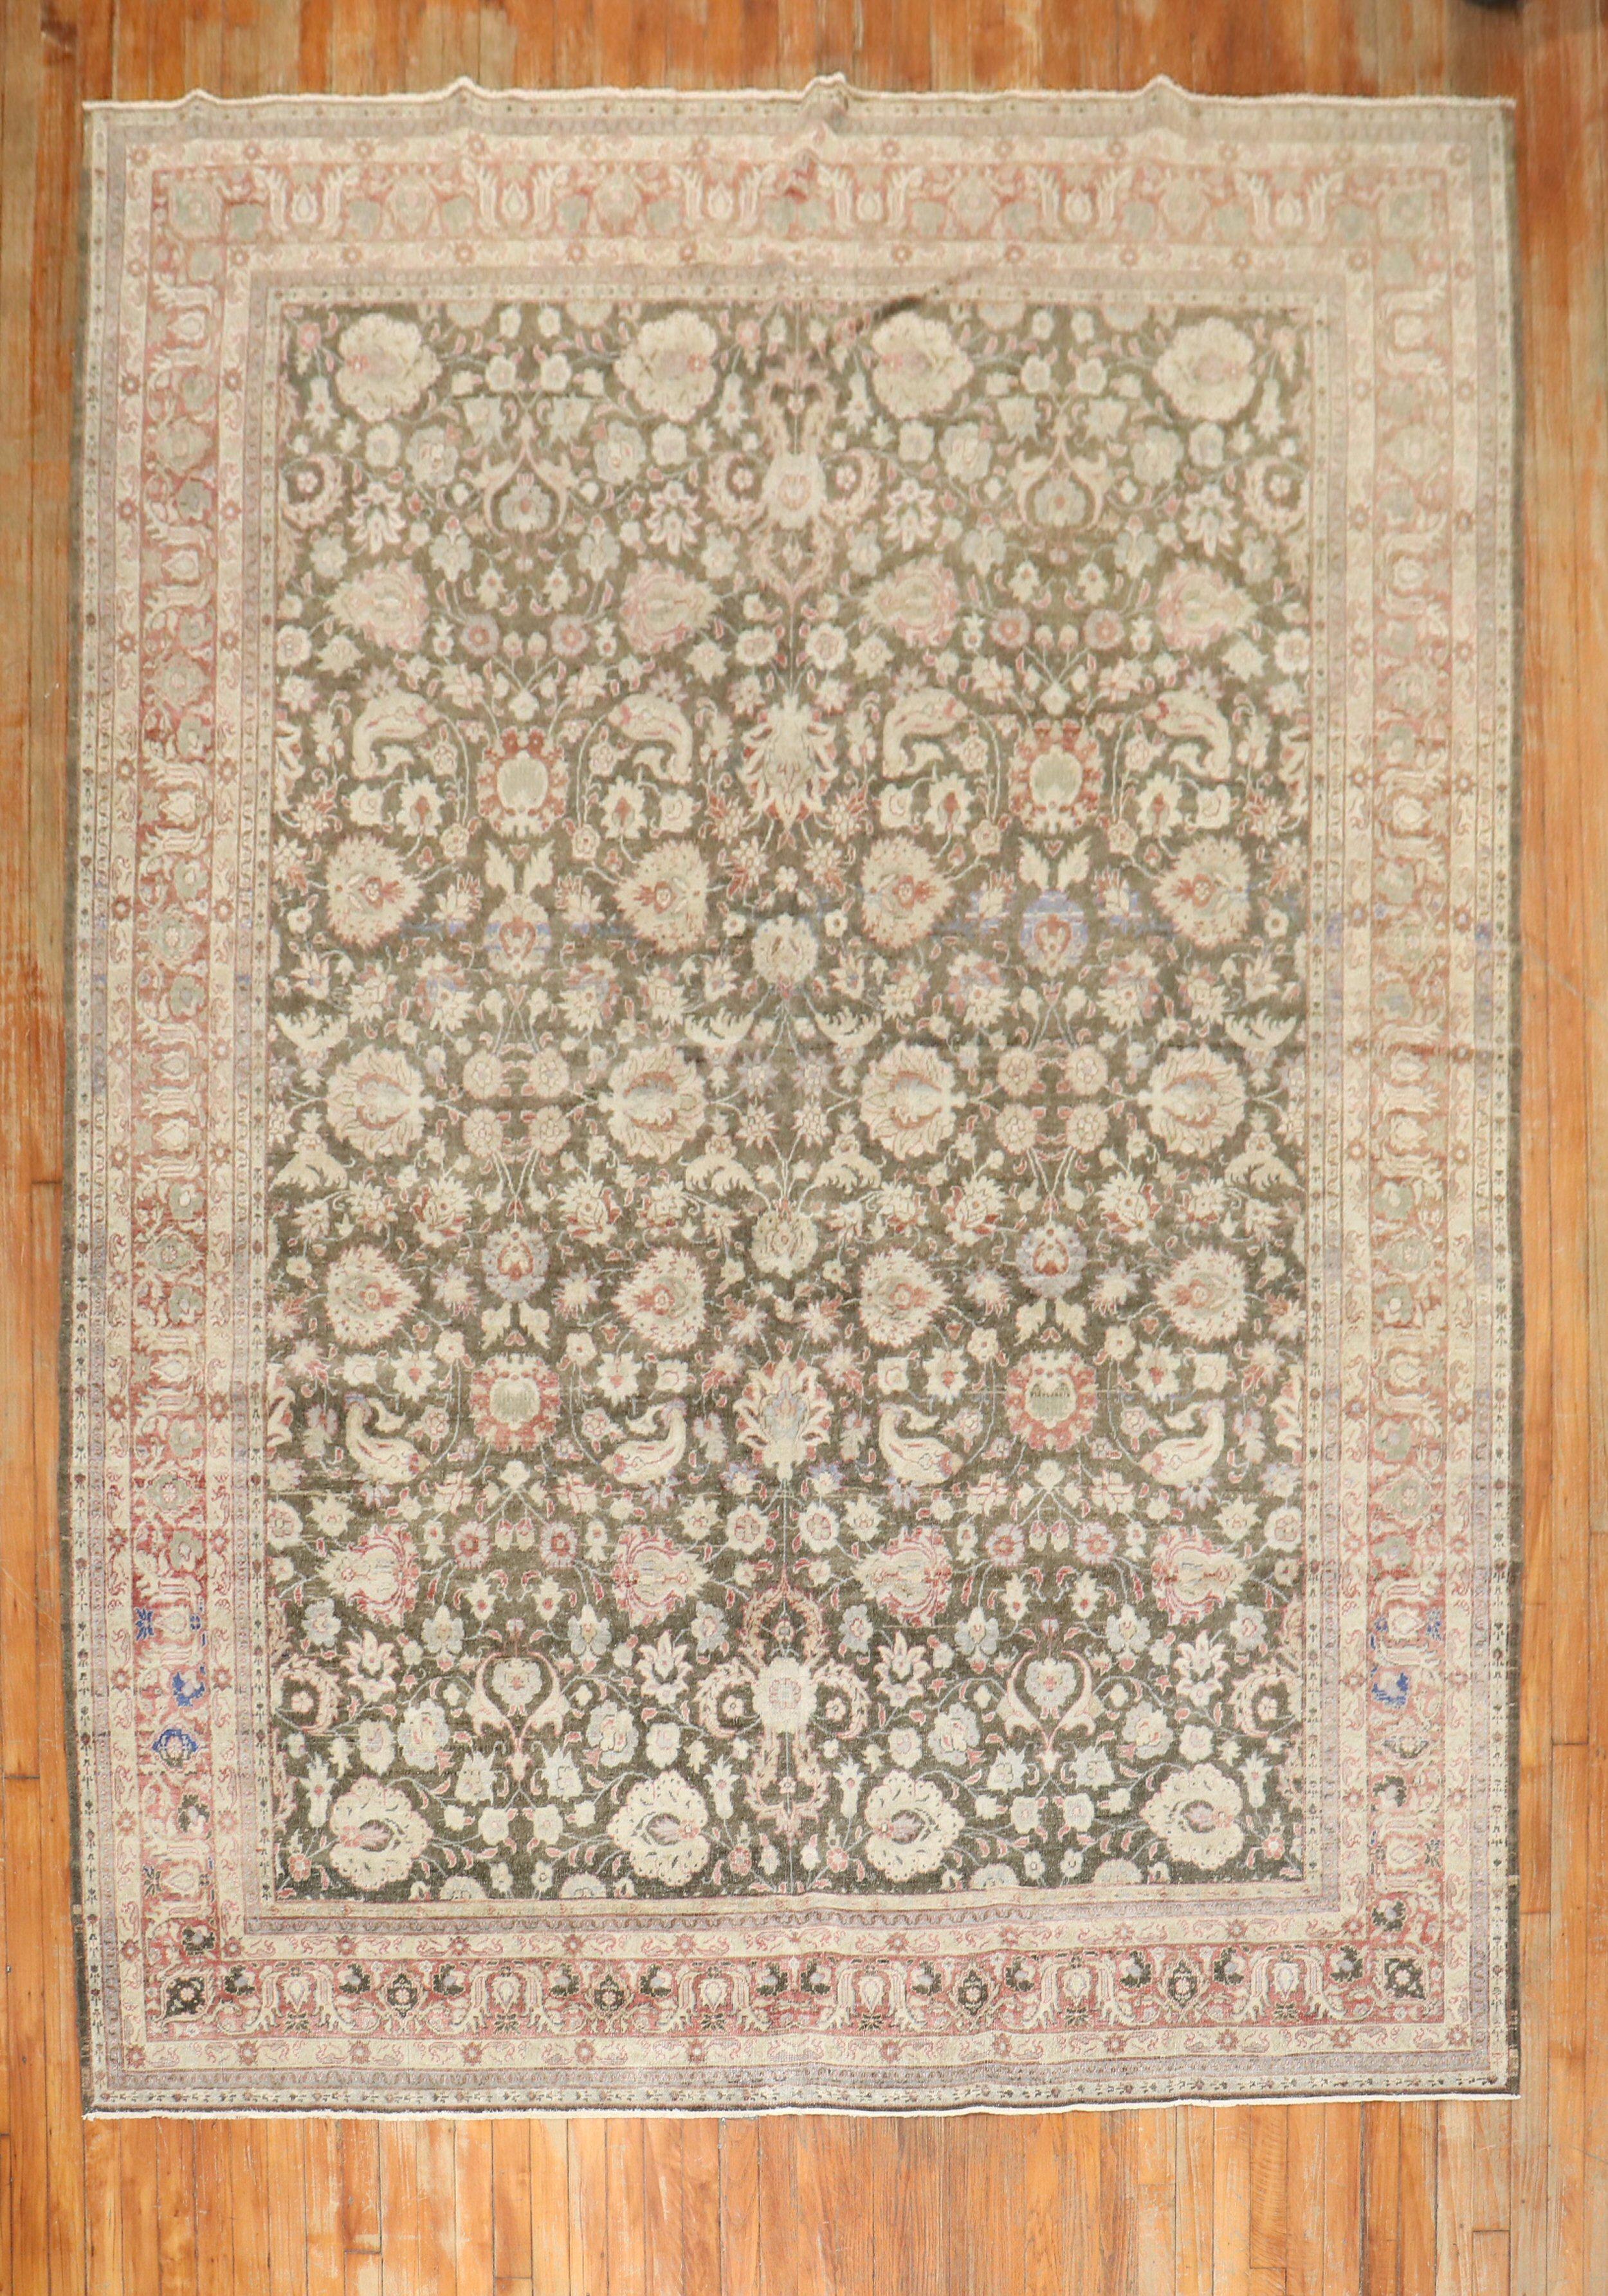 Ein türkischer Sivas-Teppich mit Blumenmuster aus der Mitte des 20. Jahrhunderts mit einem Blumenfeld in Erdtönen

Maße: 7'4'' x 10'5''.